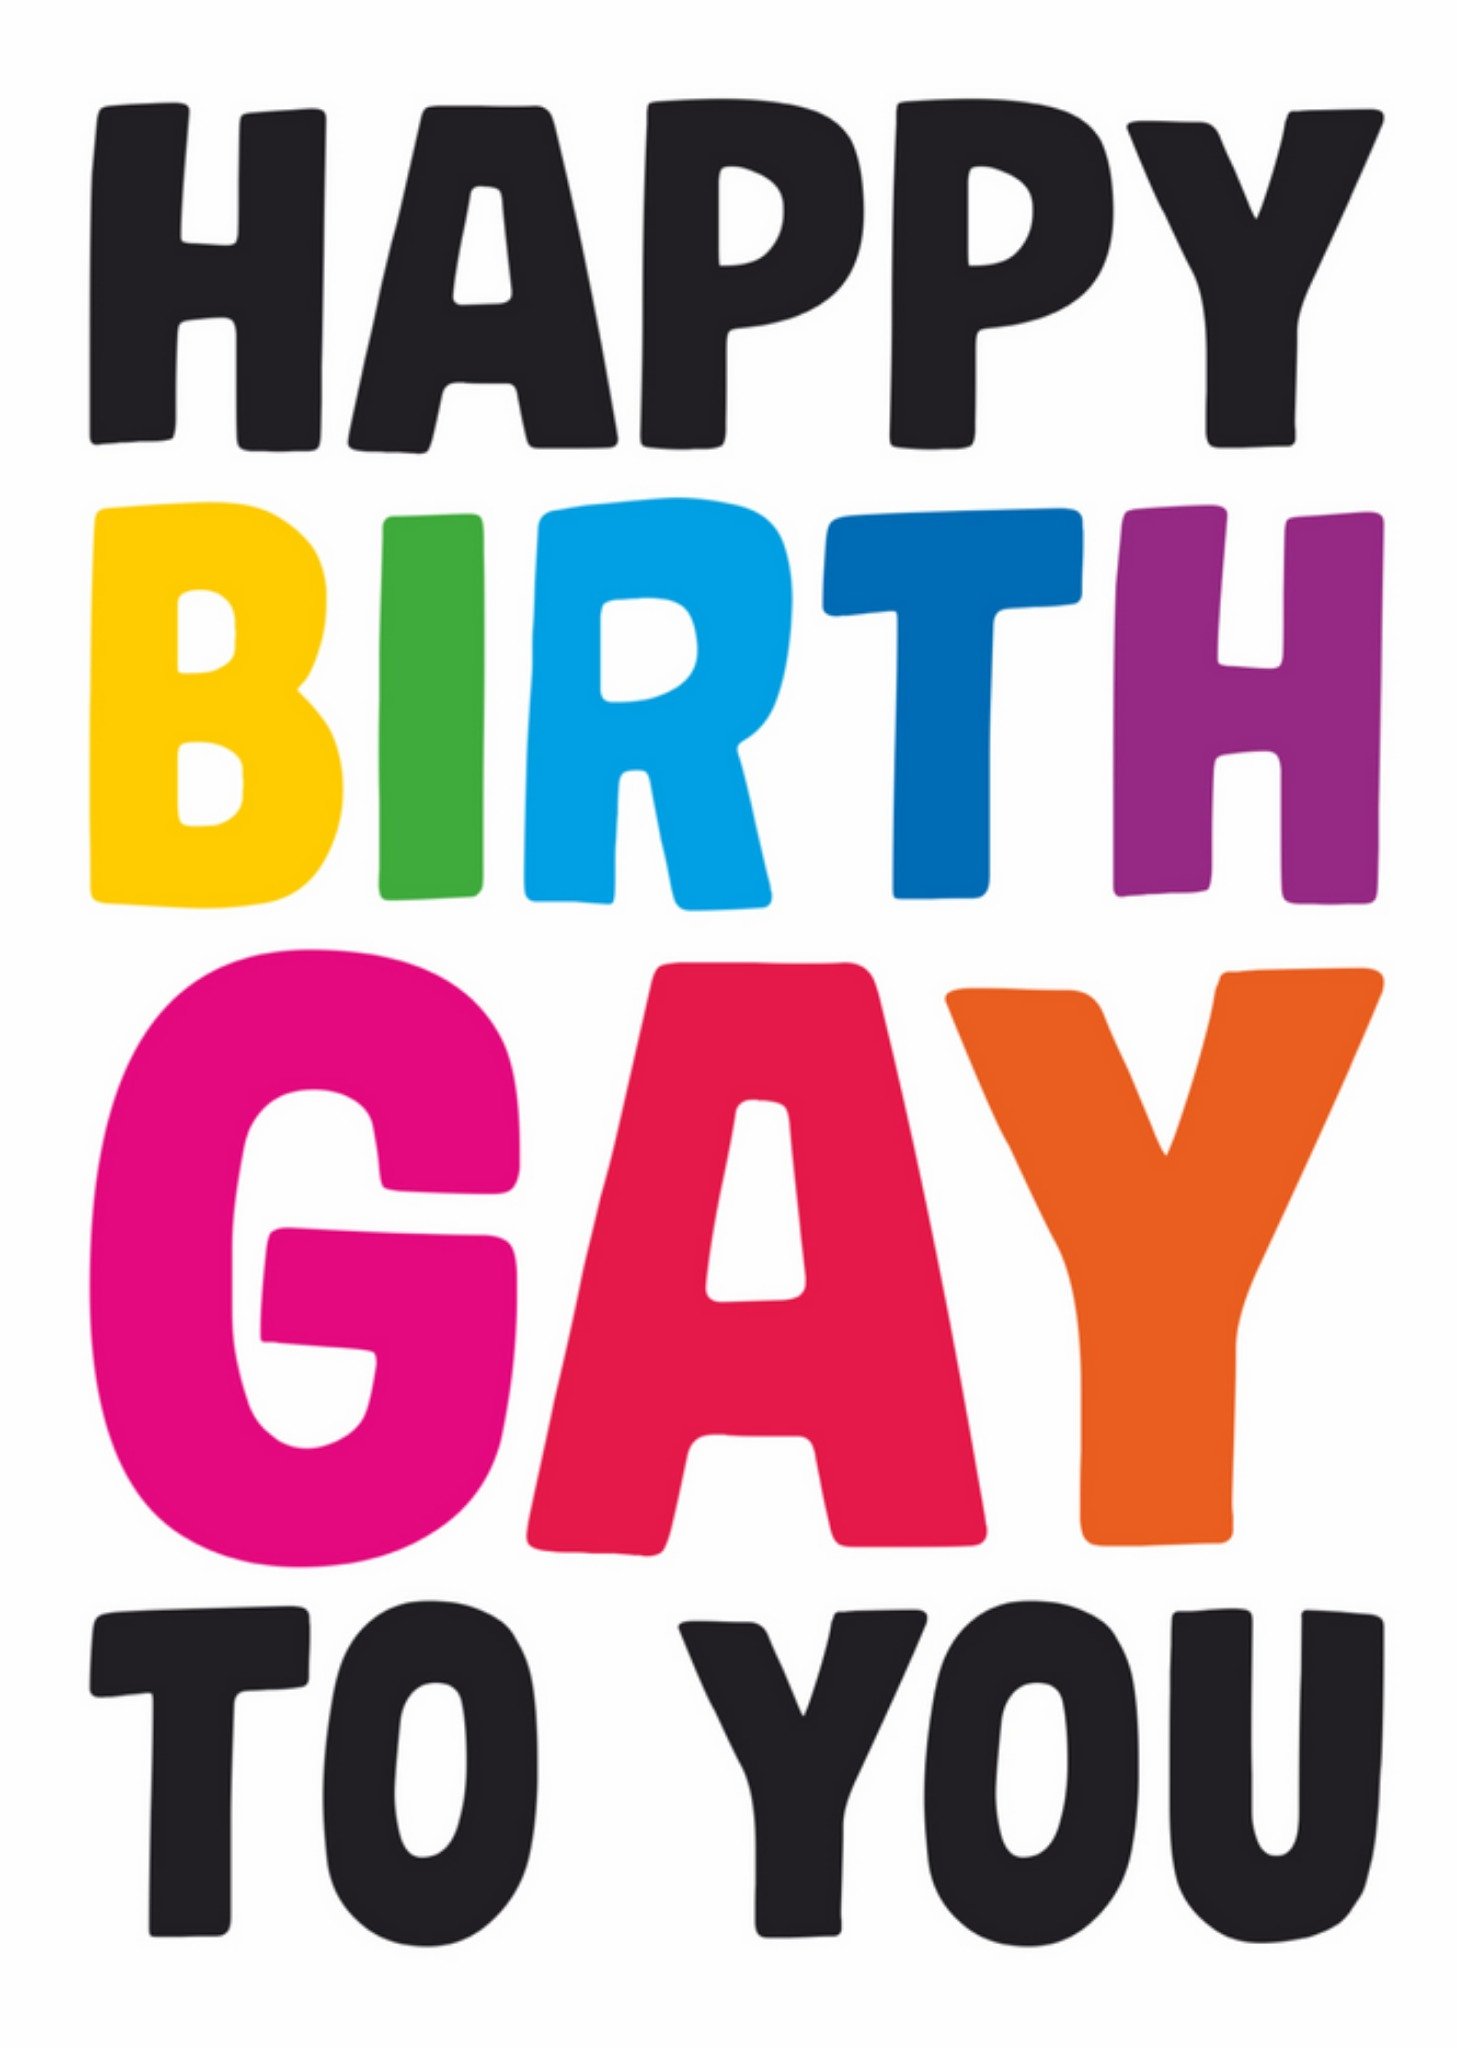 Dean Morris - Verjaardagskaart - happy birthgay